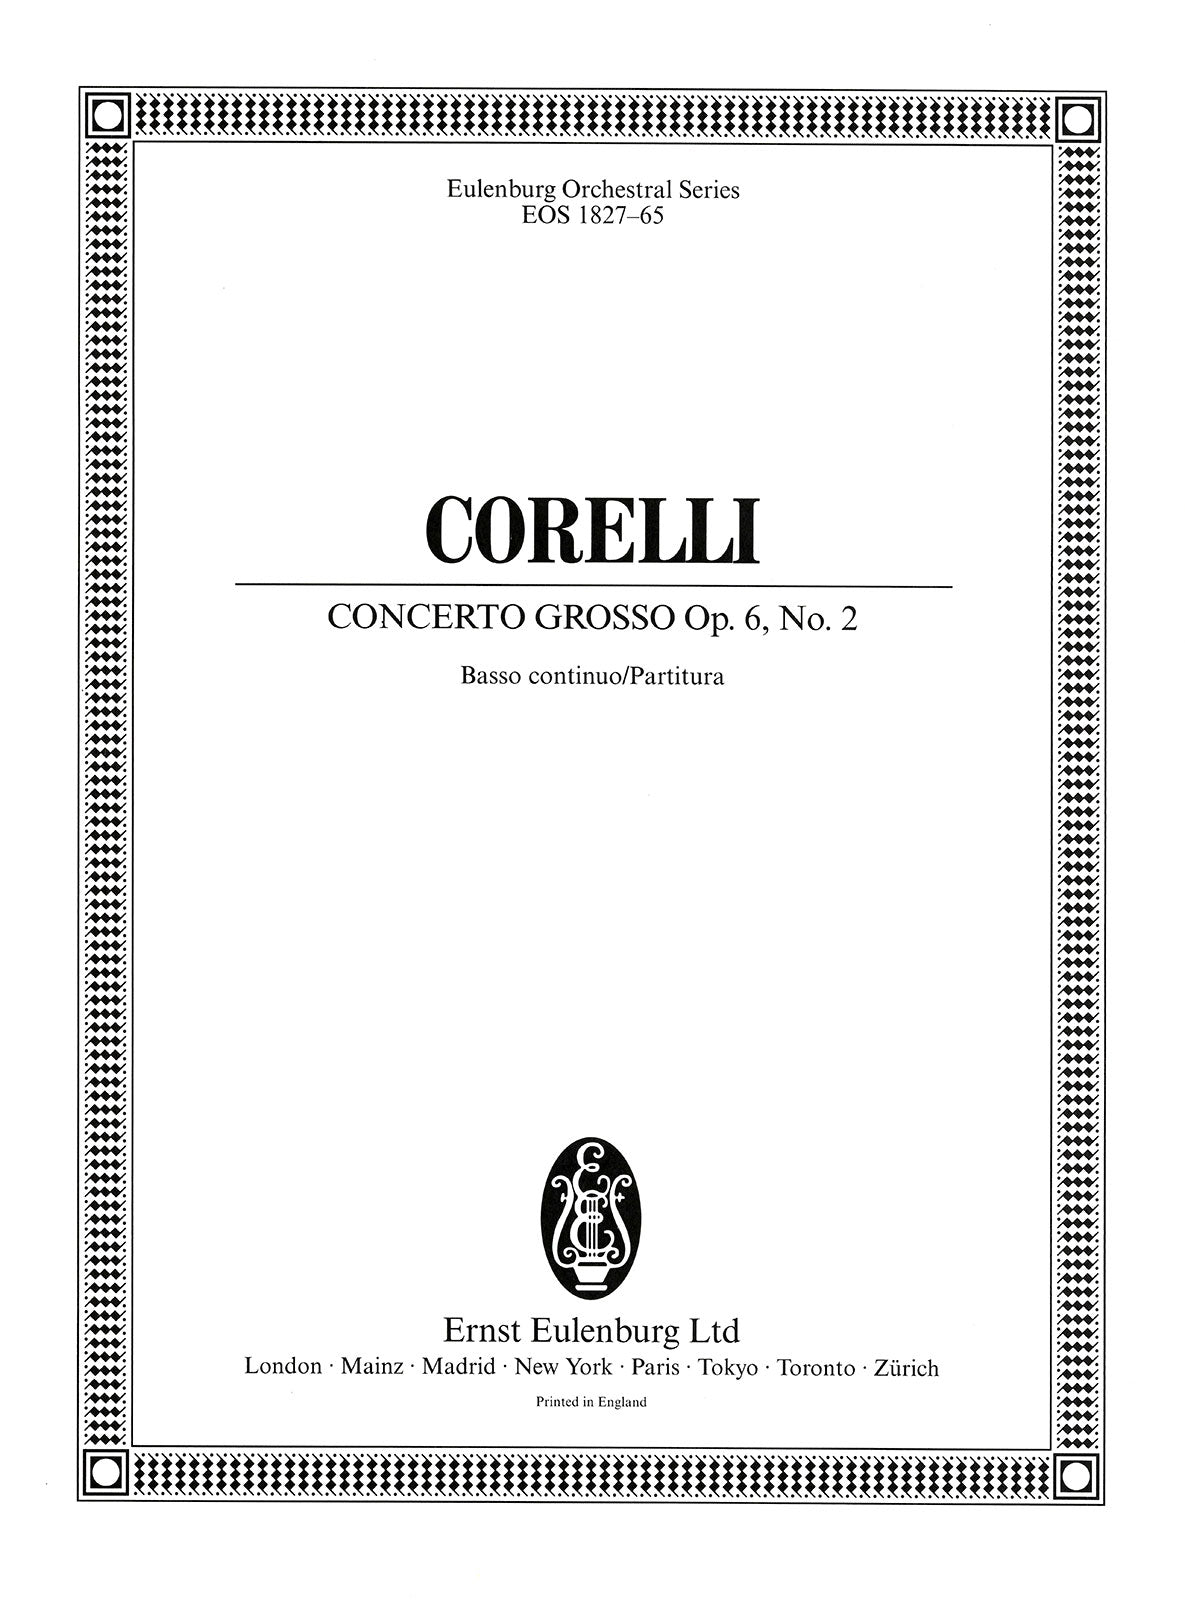 Corelli: Concerto grosso in F Major, Op. 6, No. 2